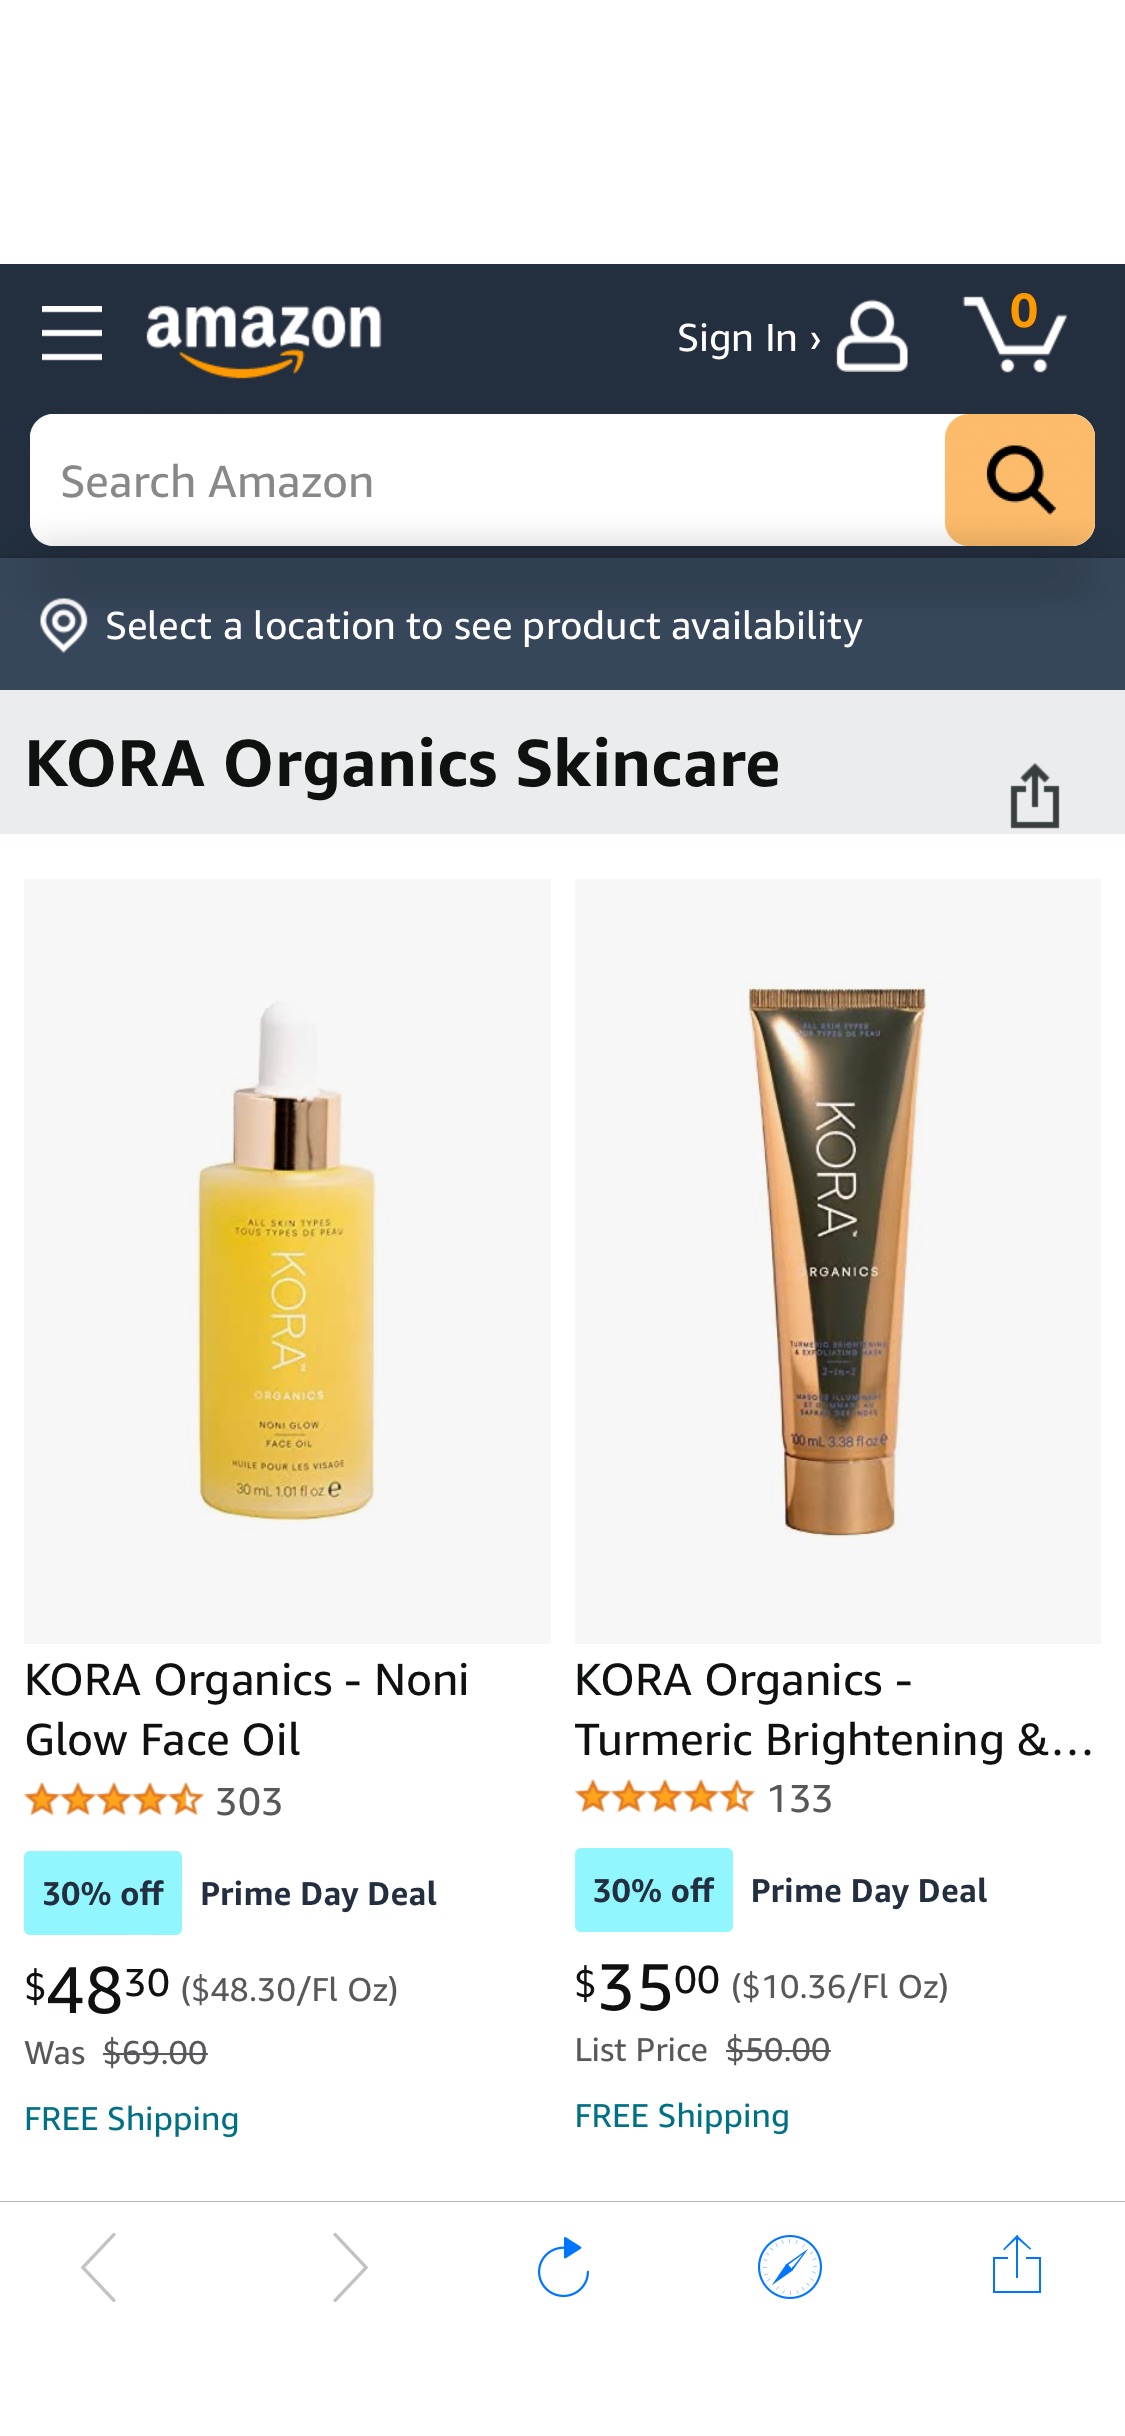 KORA Organics Skincare 低至7折